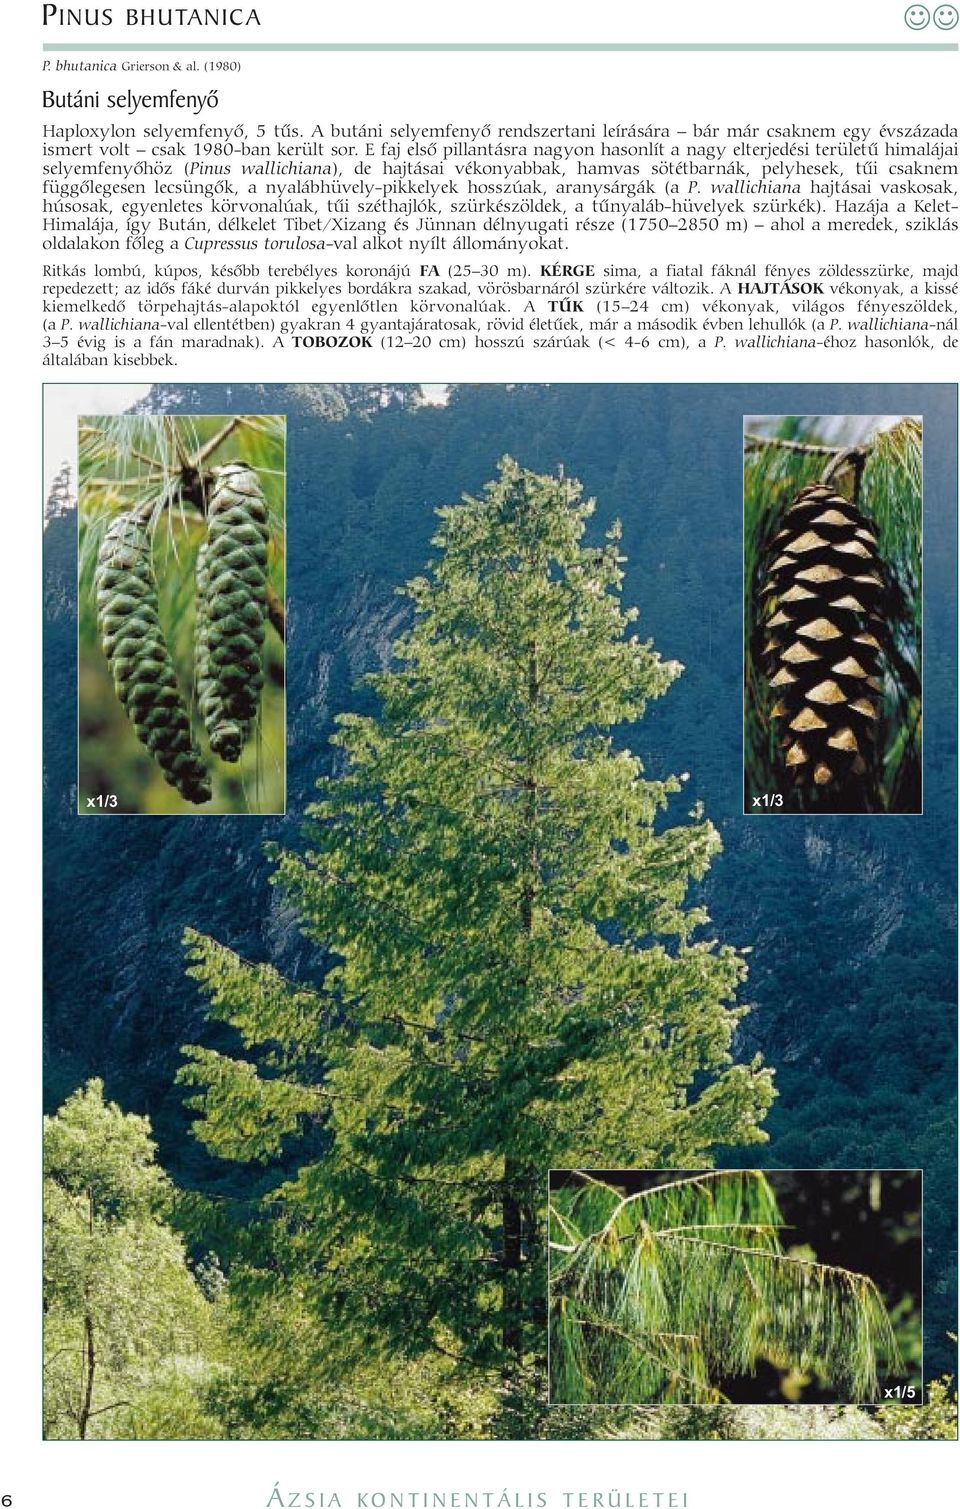 E faj elsõ pillantásra nagyon hasonlít a nagy elterjedési területû himalájai selyemfenyõhöz (Pinus wallichiana), de hajtásai vékonyabbak, hamvas sötétbarnák, pelyhesek, tûi csaknem függõlegesen